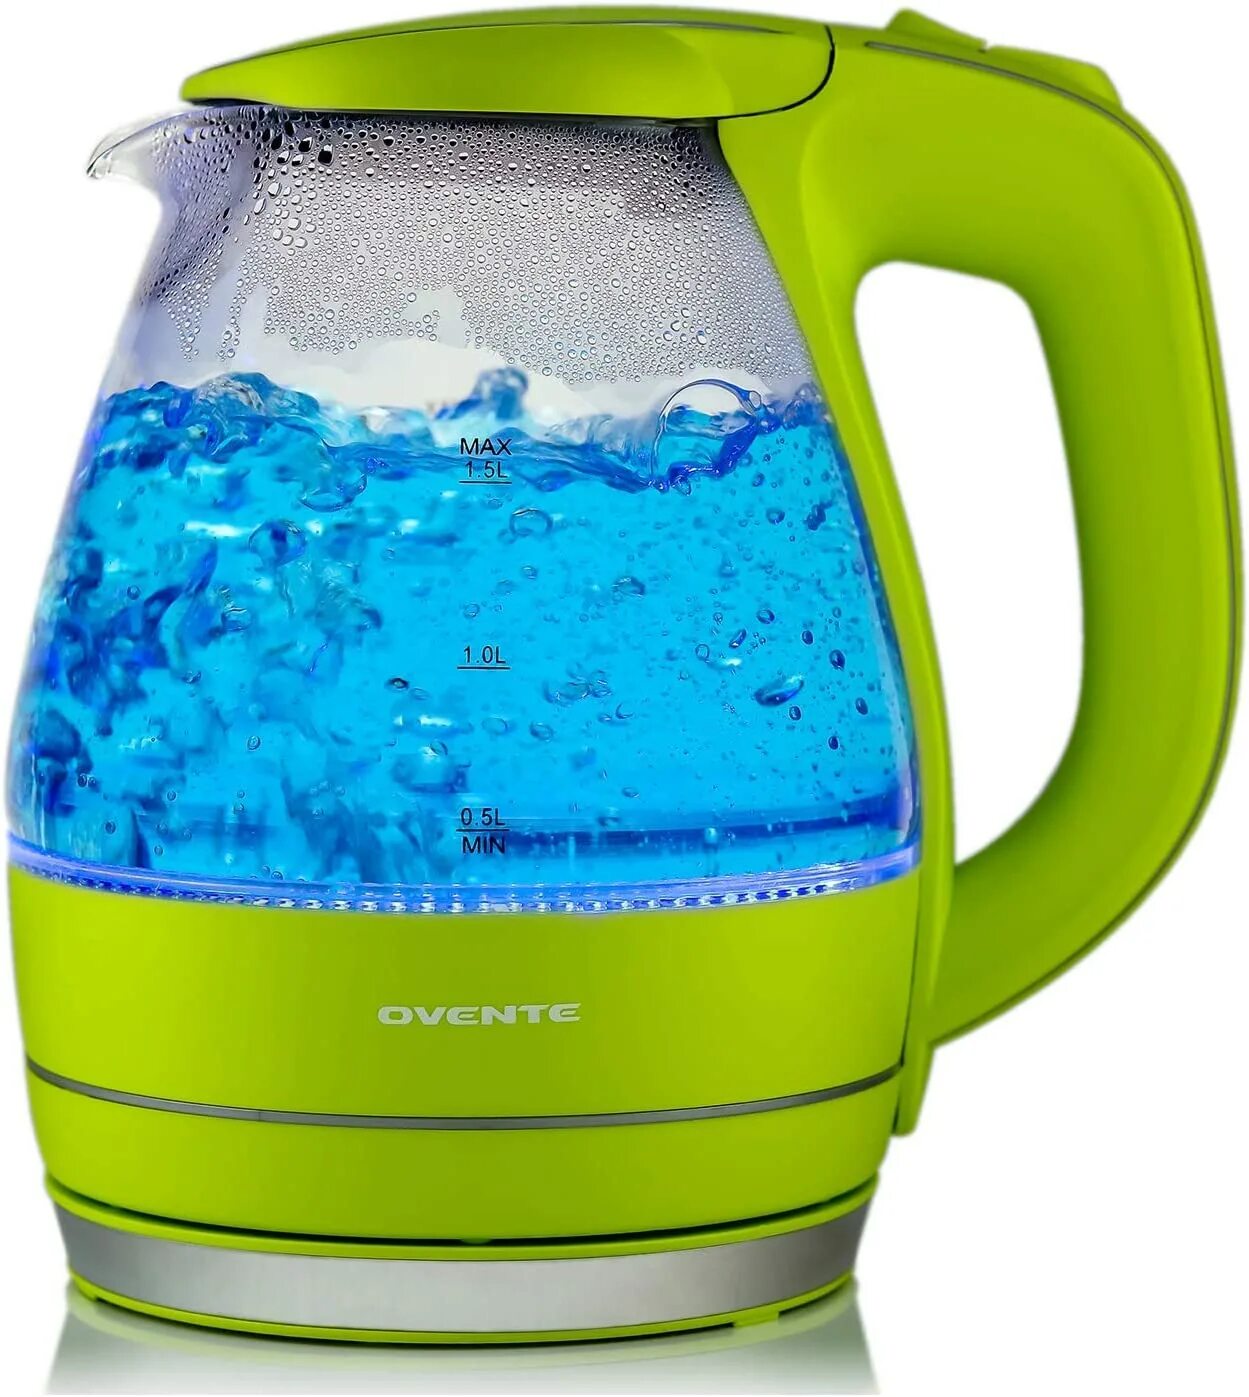 DEXP dw1500 зеленый чайник. Чайник электрический стеклянный салатовый. Электрический чайник зеленого цвета. Чайник с зеленым стеклом электрический.